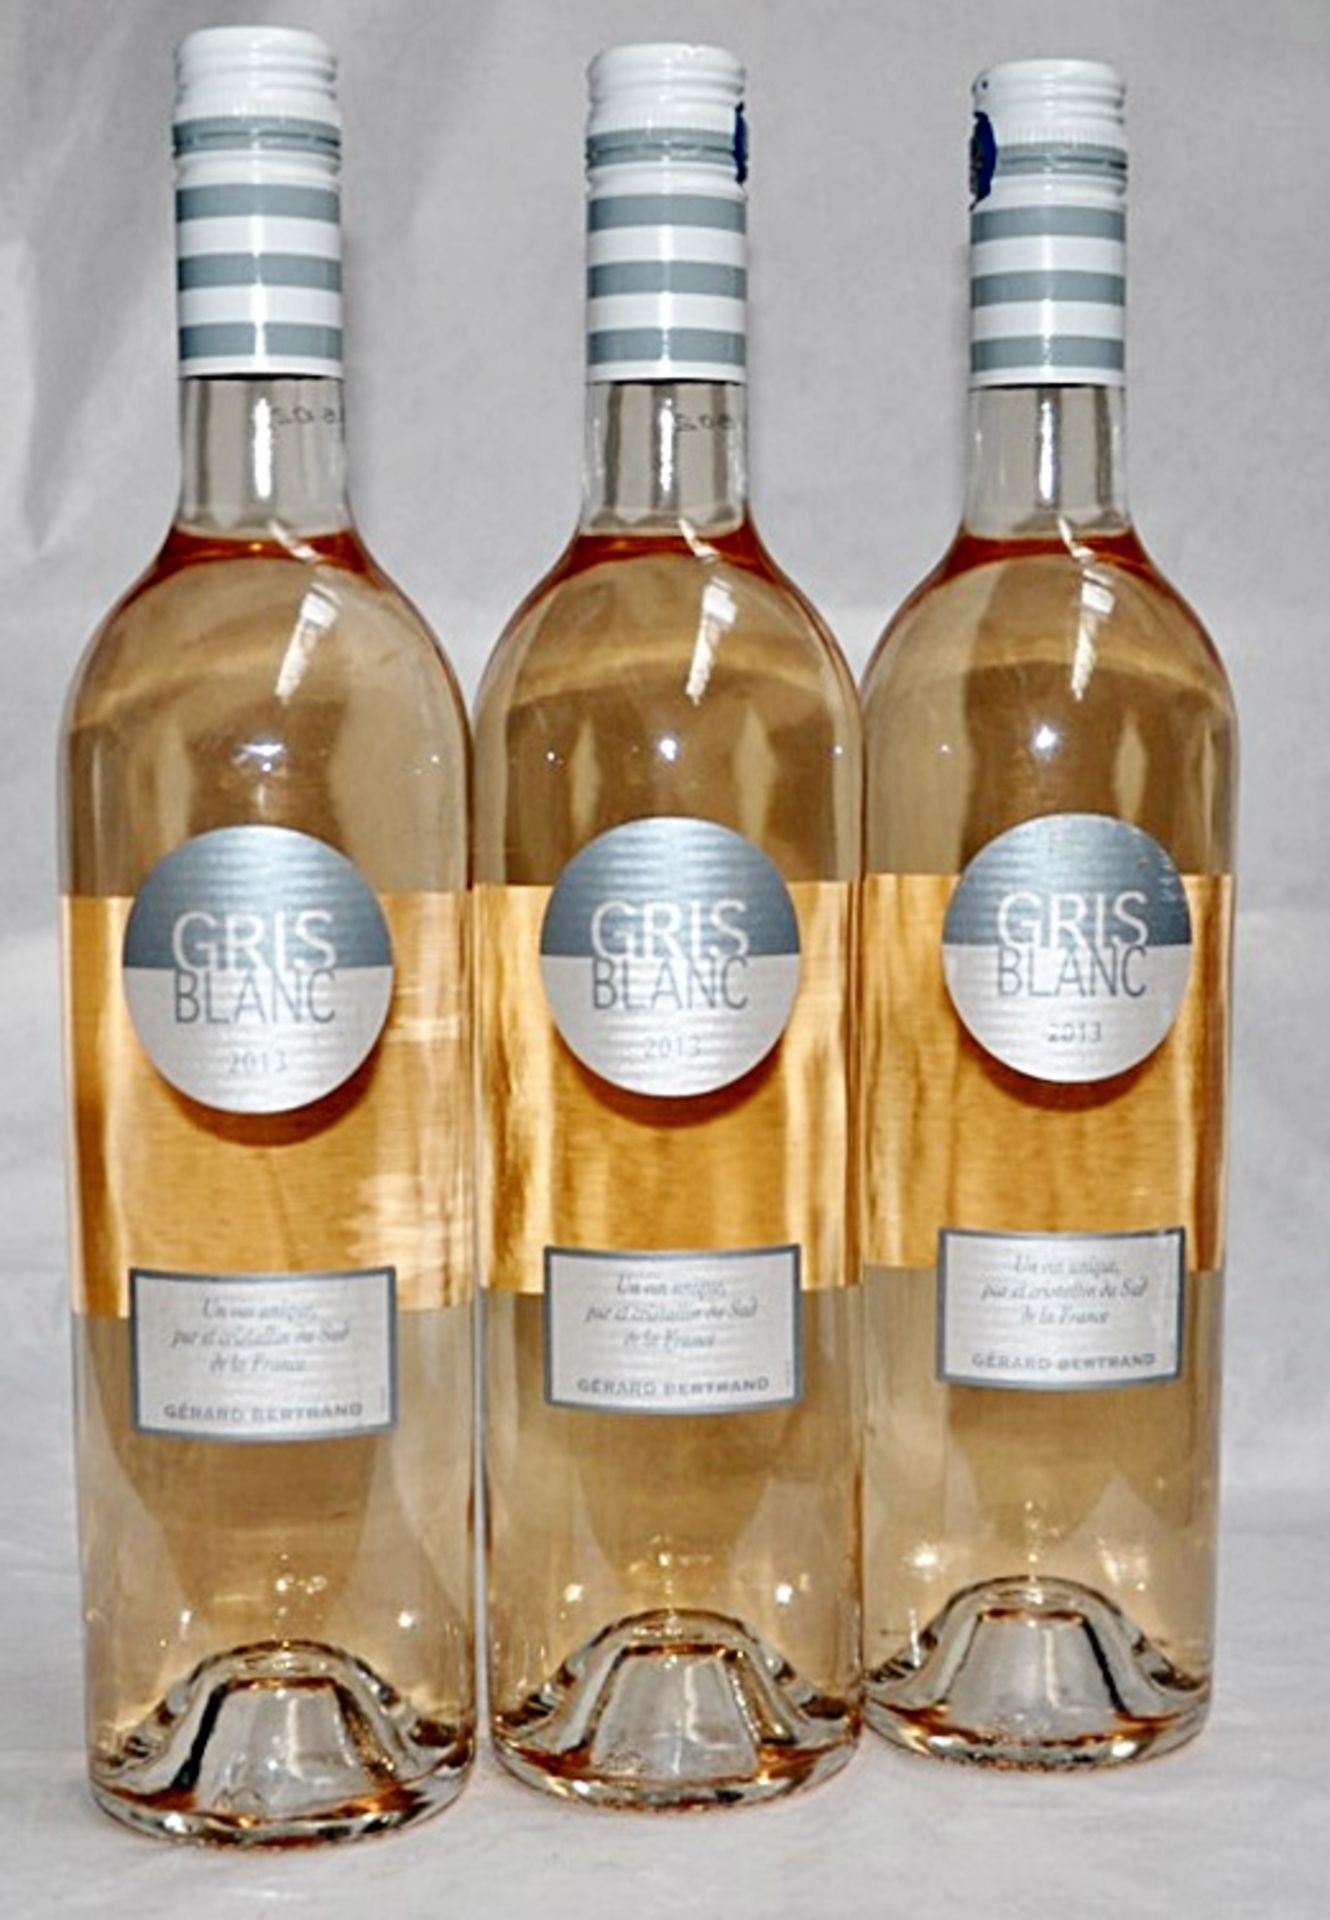 3 x 2013 Gerard Bertrand Gris Blanc, IGP Pays d'Oc, France – 2013 – Bottle Size 75cl - Volume